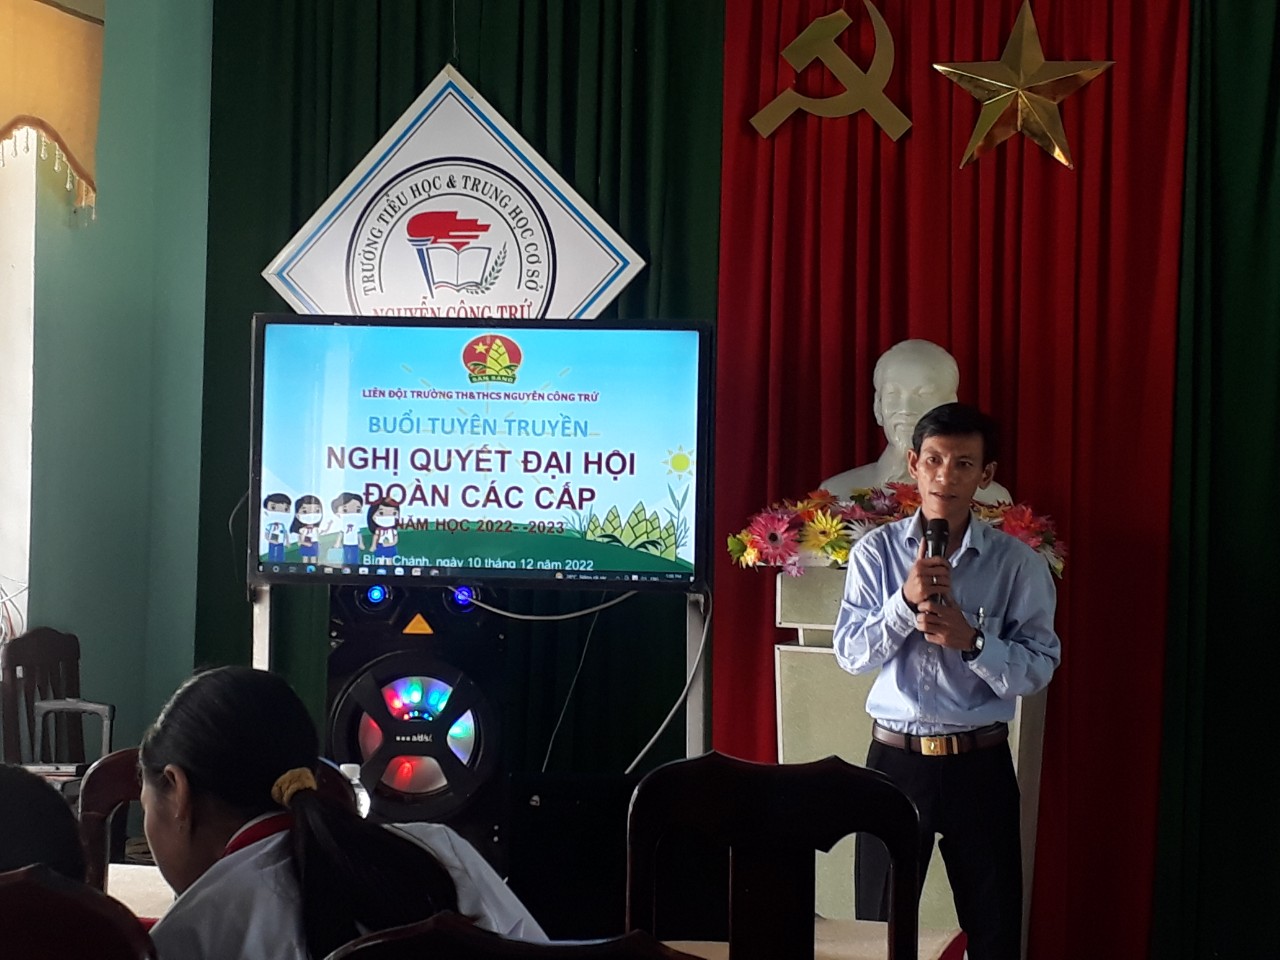 Liên đội trường TH&THCS Nguyễn Công Trứ tổ chức tuyên truyền Nghị quyết Đại hội đoàn các cấp và Tập huấn Phòng, chống bạo lực, xâm hại trẻ em cho đội viên, nhi đồng